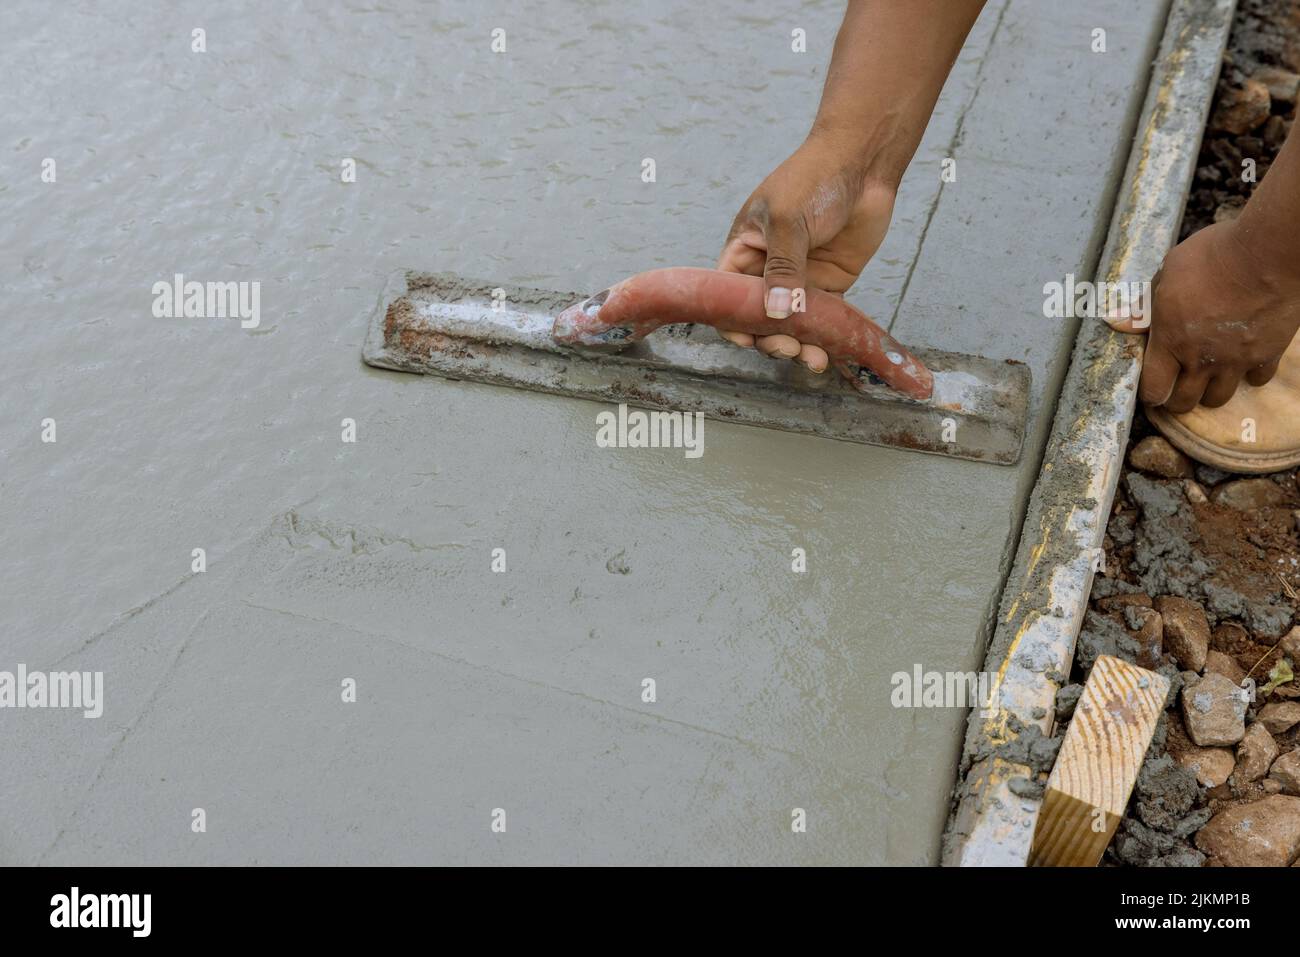 Un lavoratore sta lavorando su un nuovo marciapiede che è stato appena versato su calcestruzzo bagnato mentre tiene una cazzuola d'acciaio Foto Stock